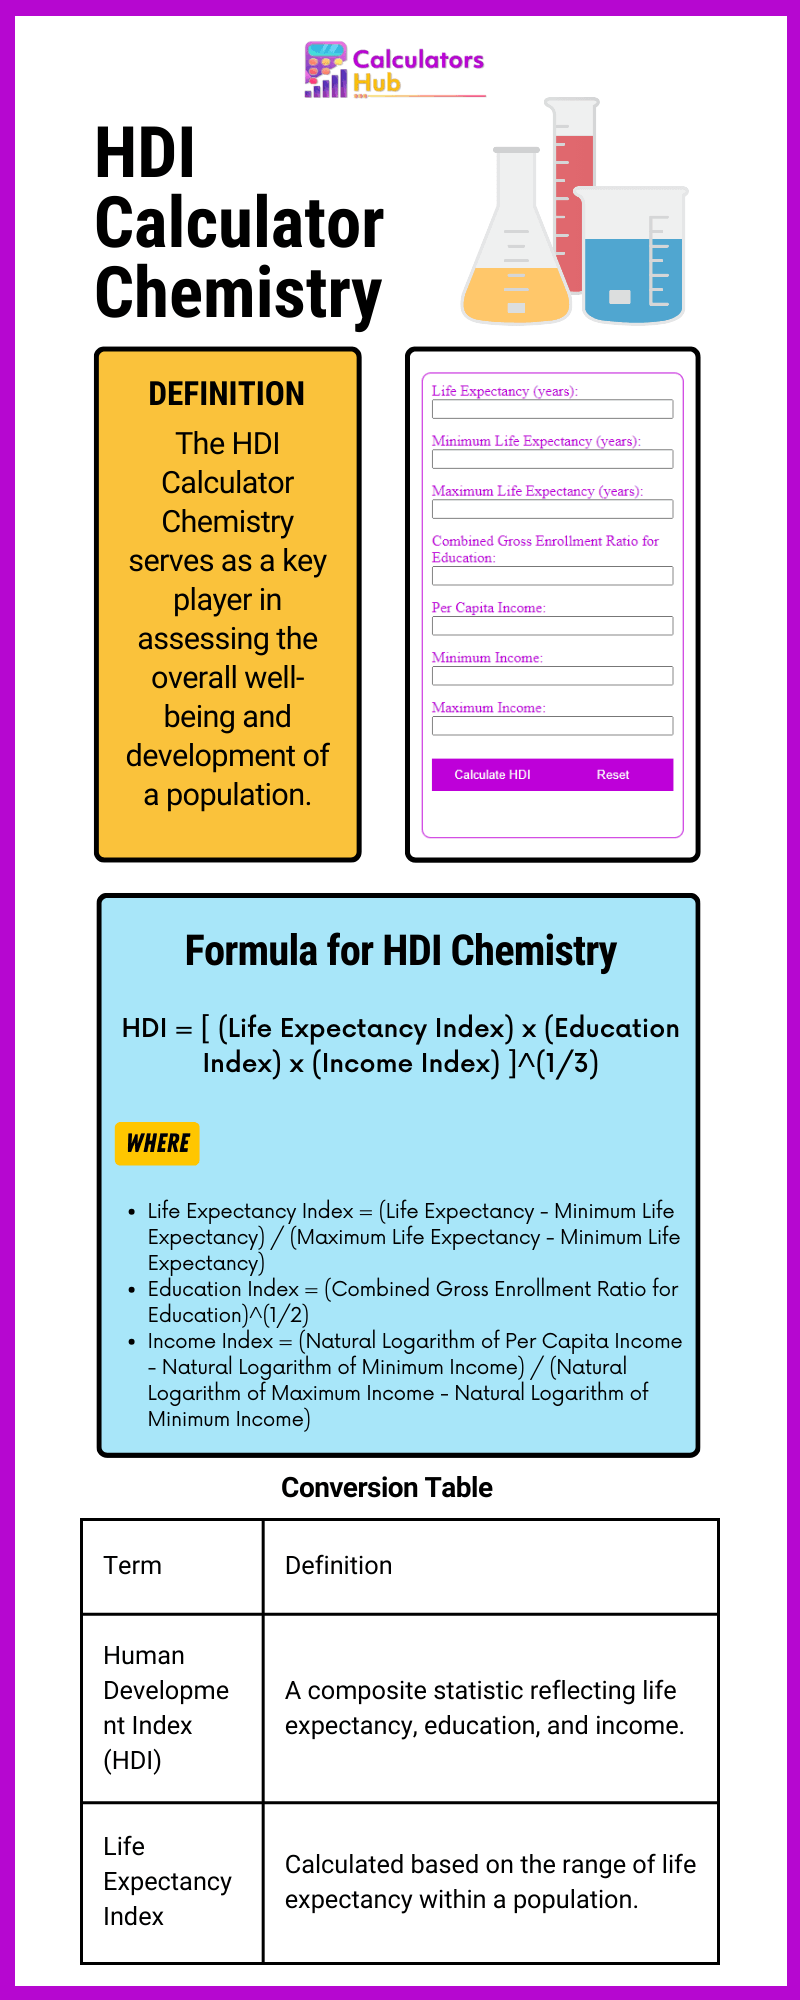 HDI Calculator Chemistry